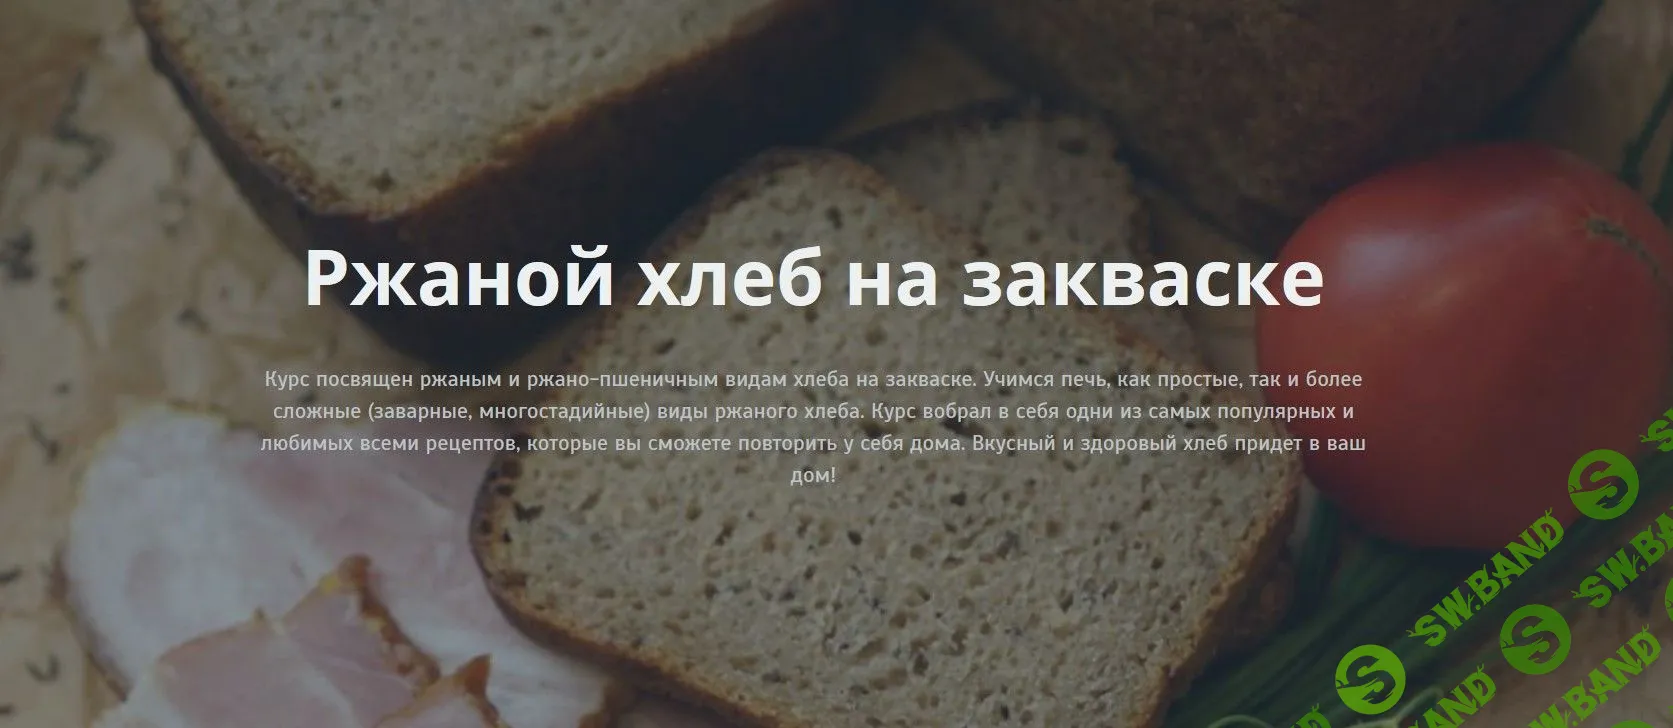 [Ольга ПекарьКо] Ржаной хлеб на закваске (2019)